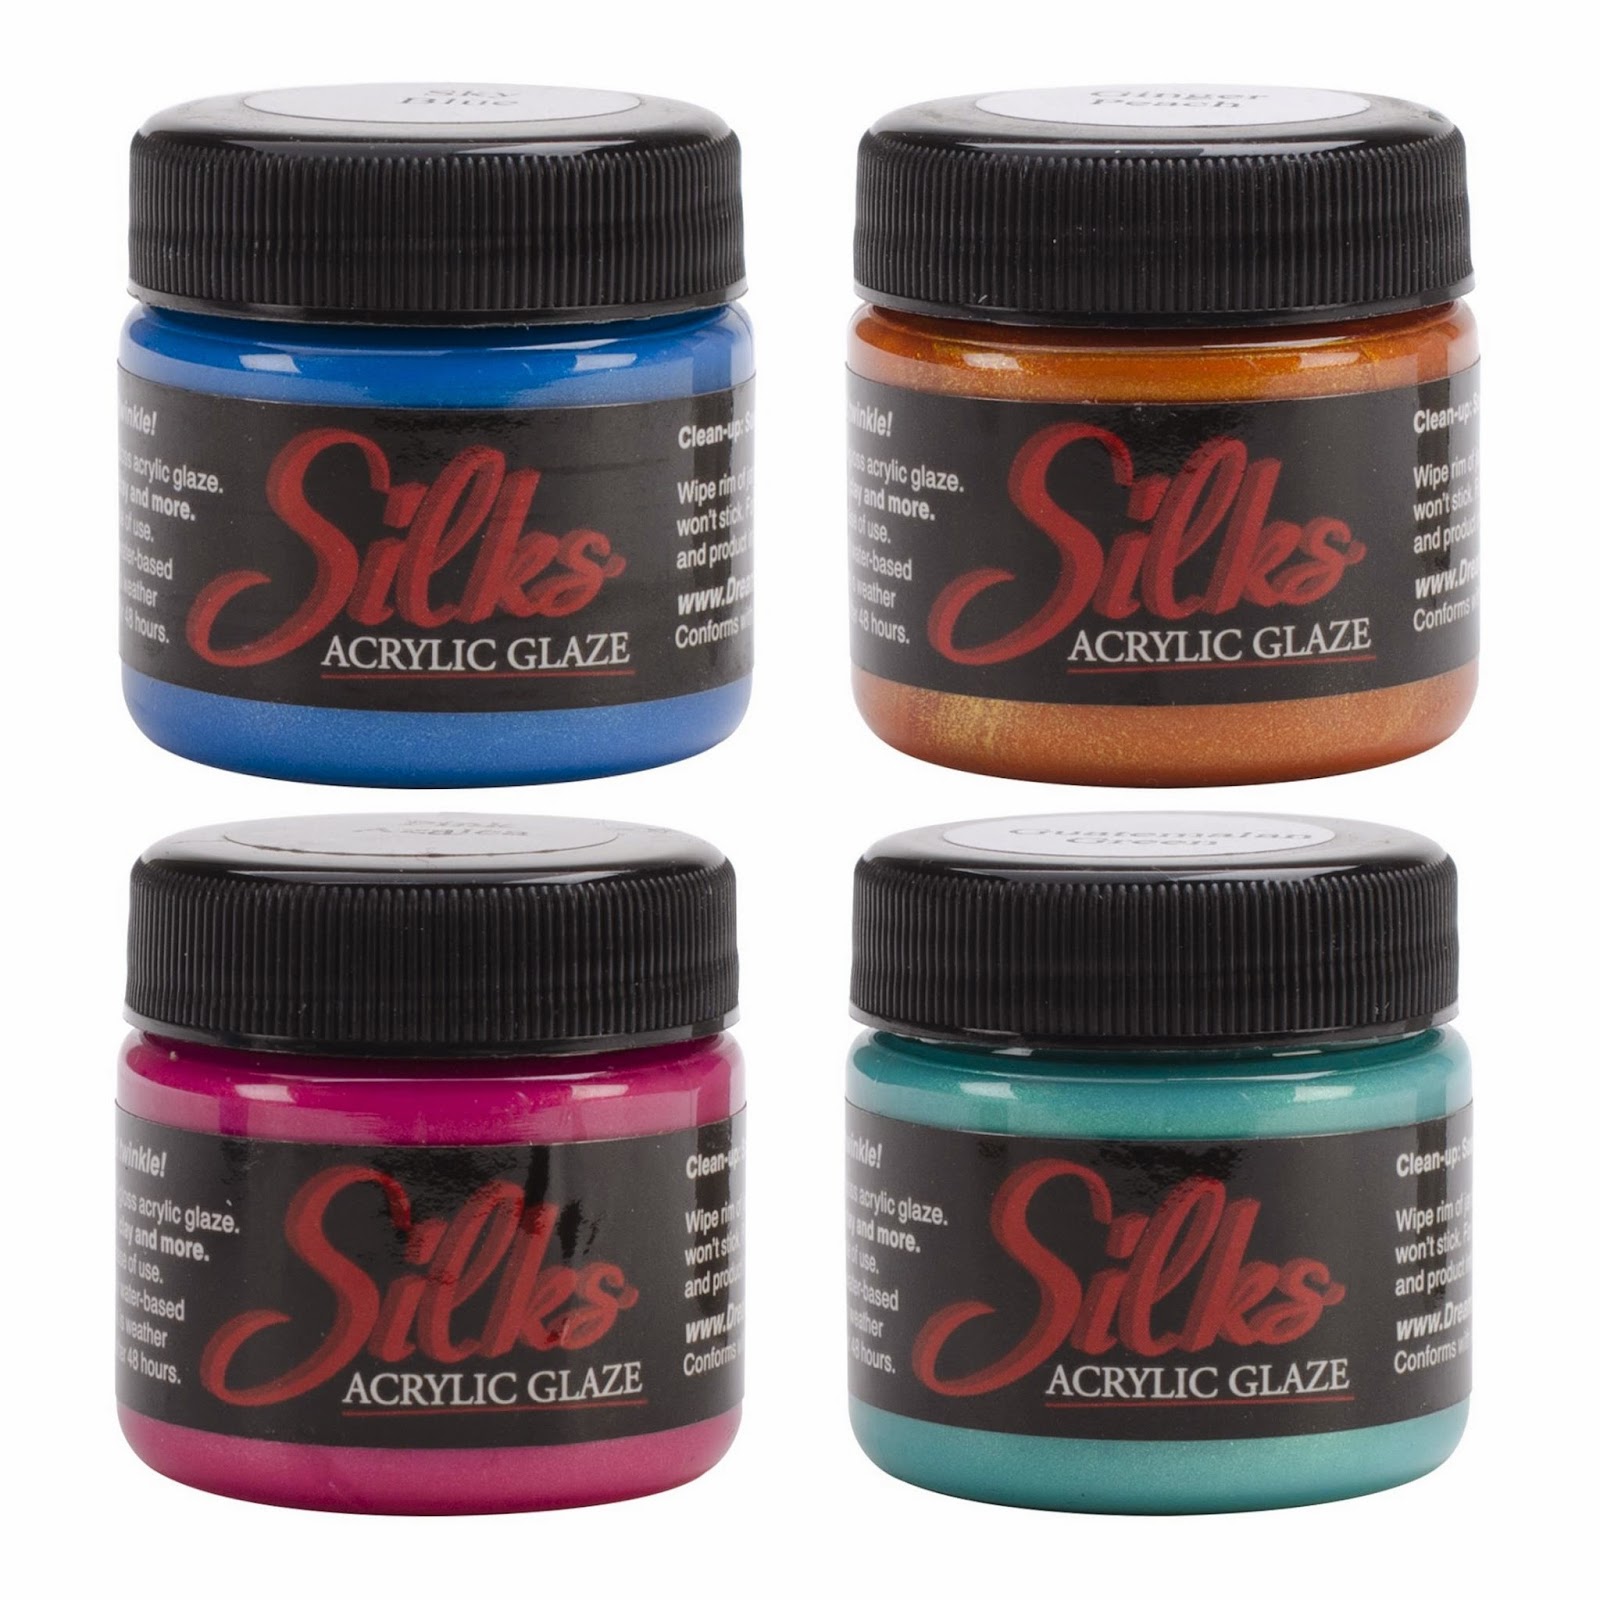 http://www.artisttradingpost.com/new-silks-acrylic-glaze-1oz-jars-431-c.asp